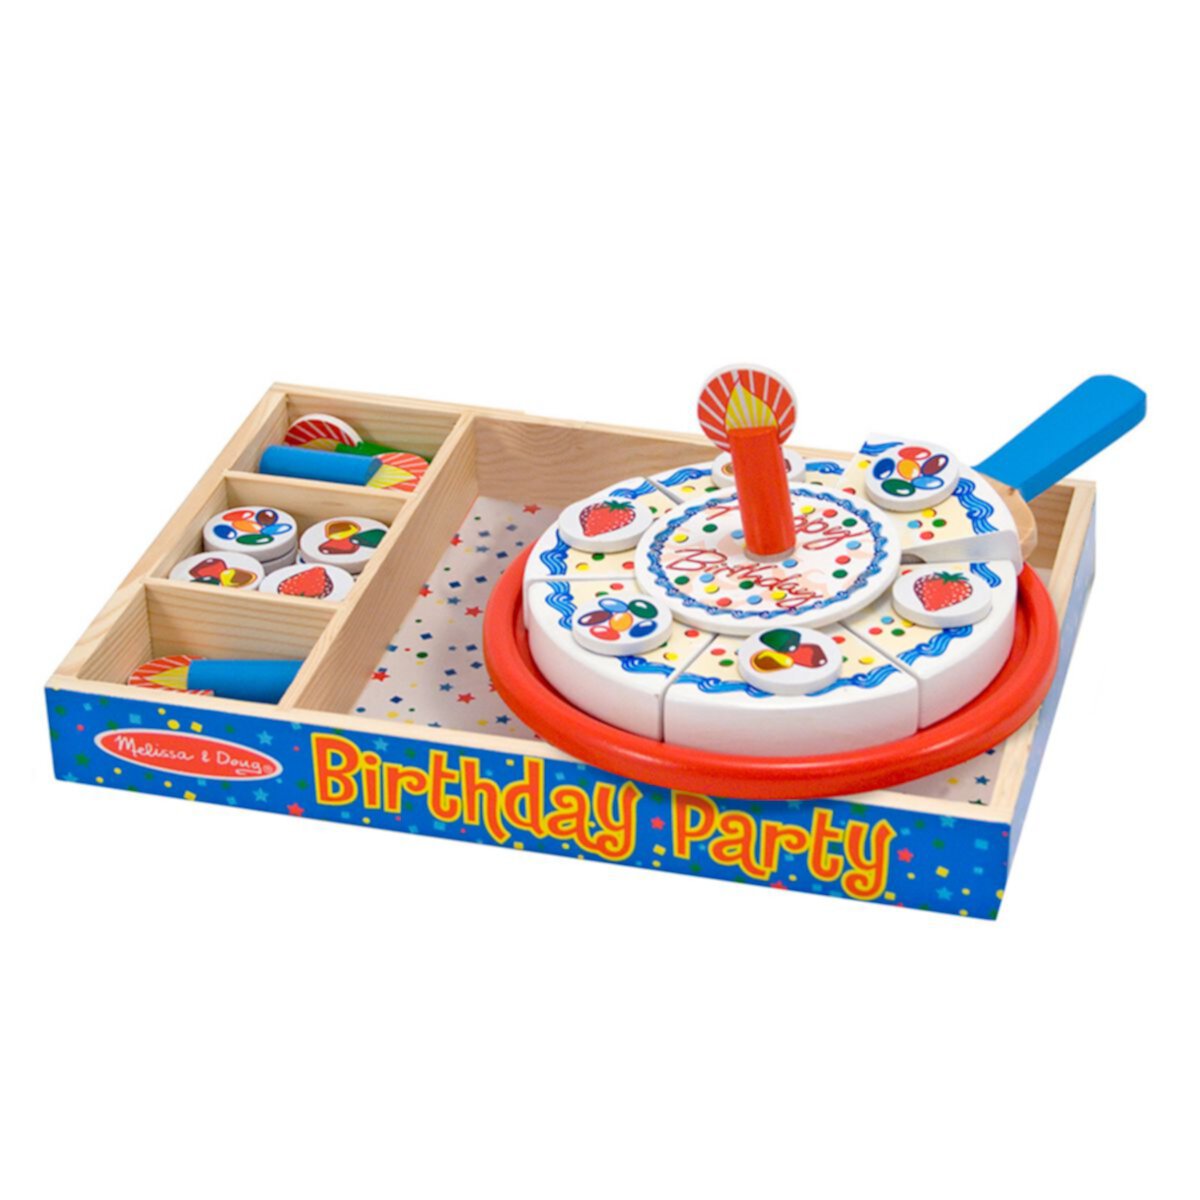 Торт на день рождения «Мелисса и Дуг» — деревянная игровая еда с разнообразными начинками и 7 свечами Unbranded